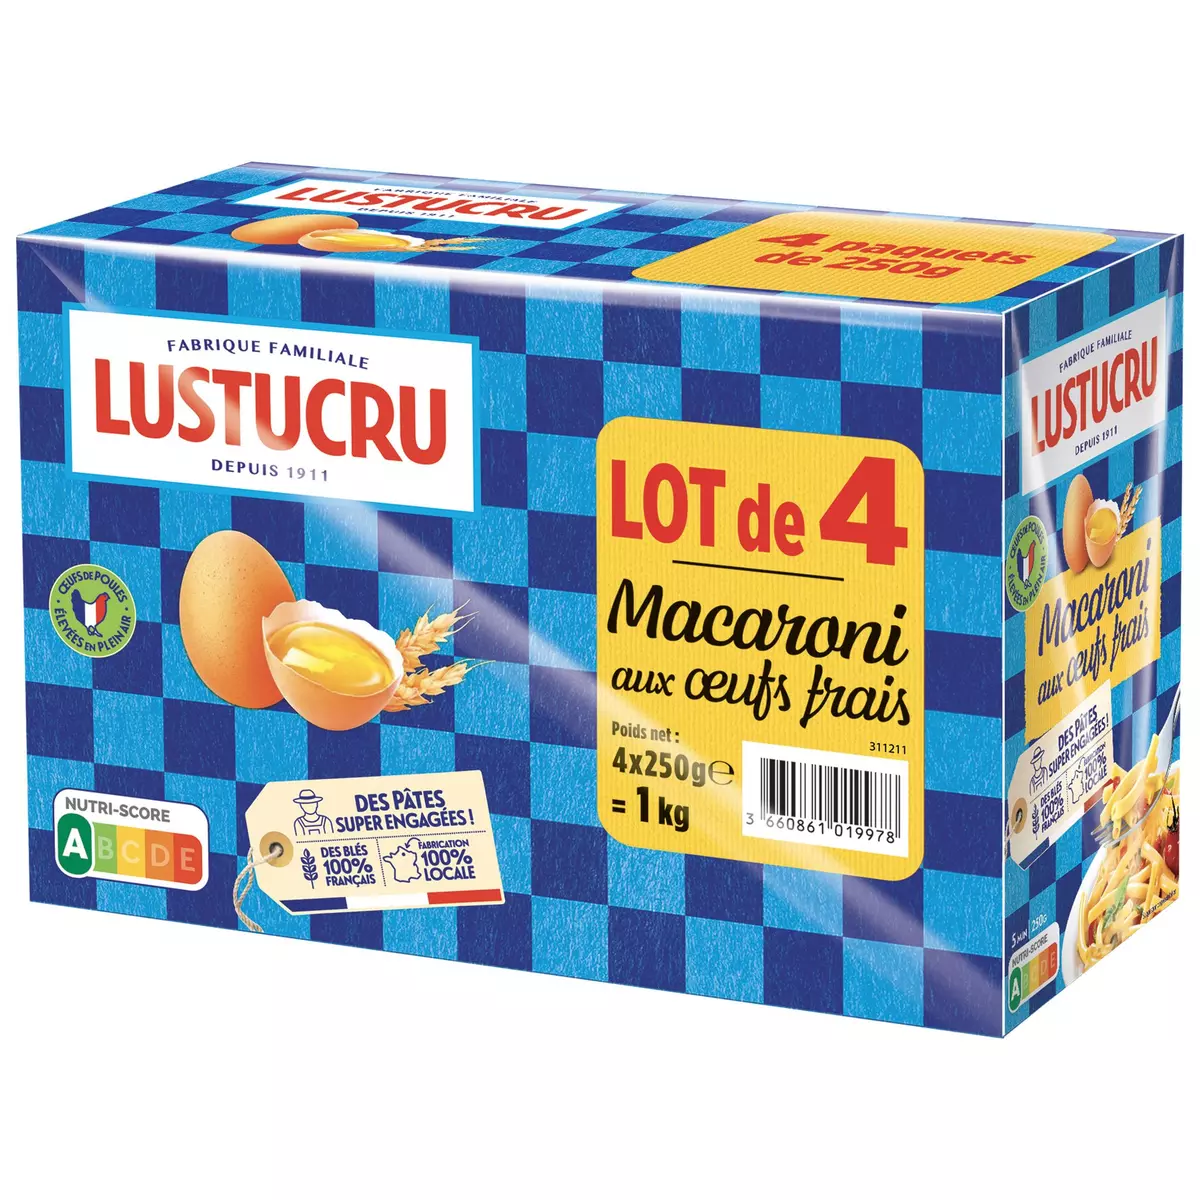 LUSTUCRU Macaroni aux œufs frais 4 paquets 1kg